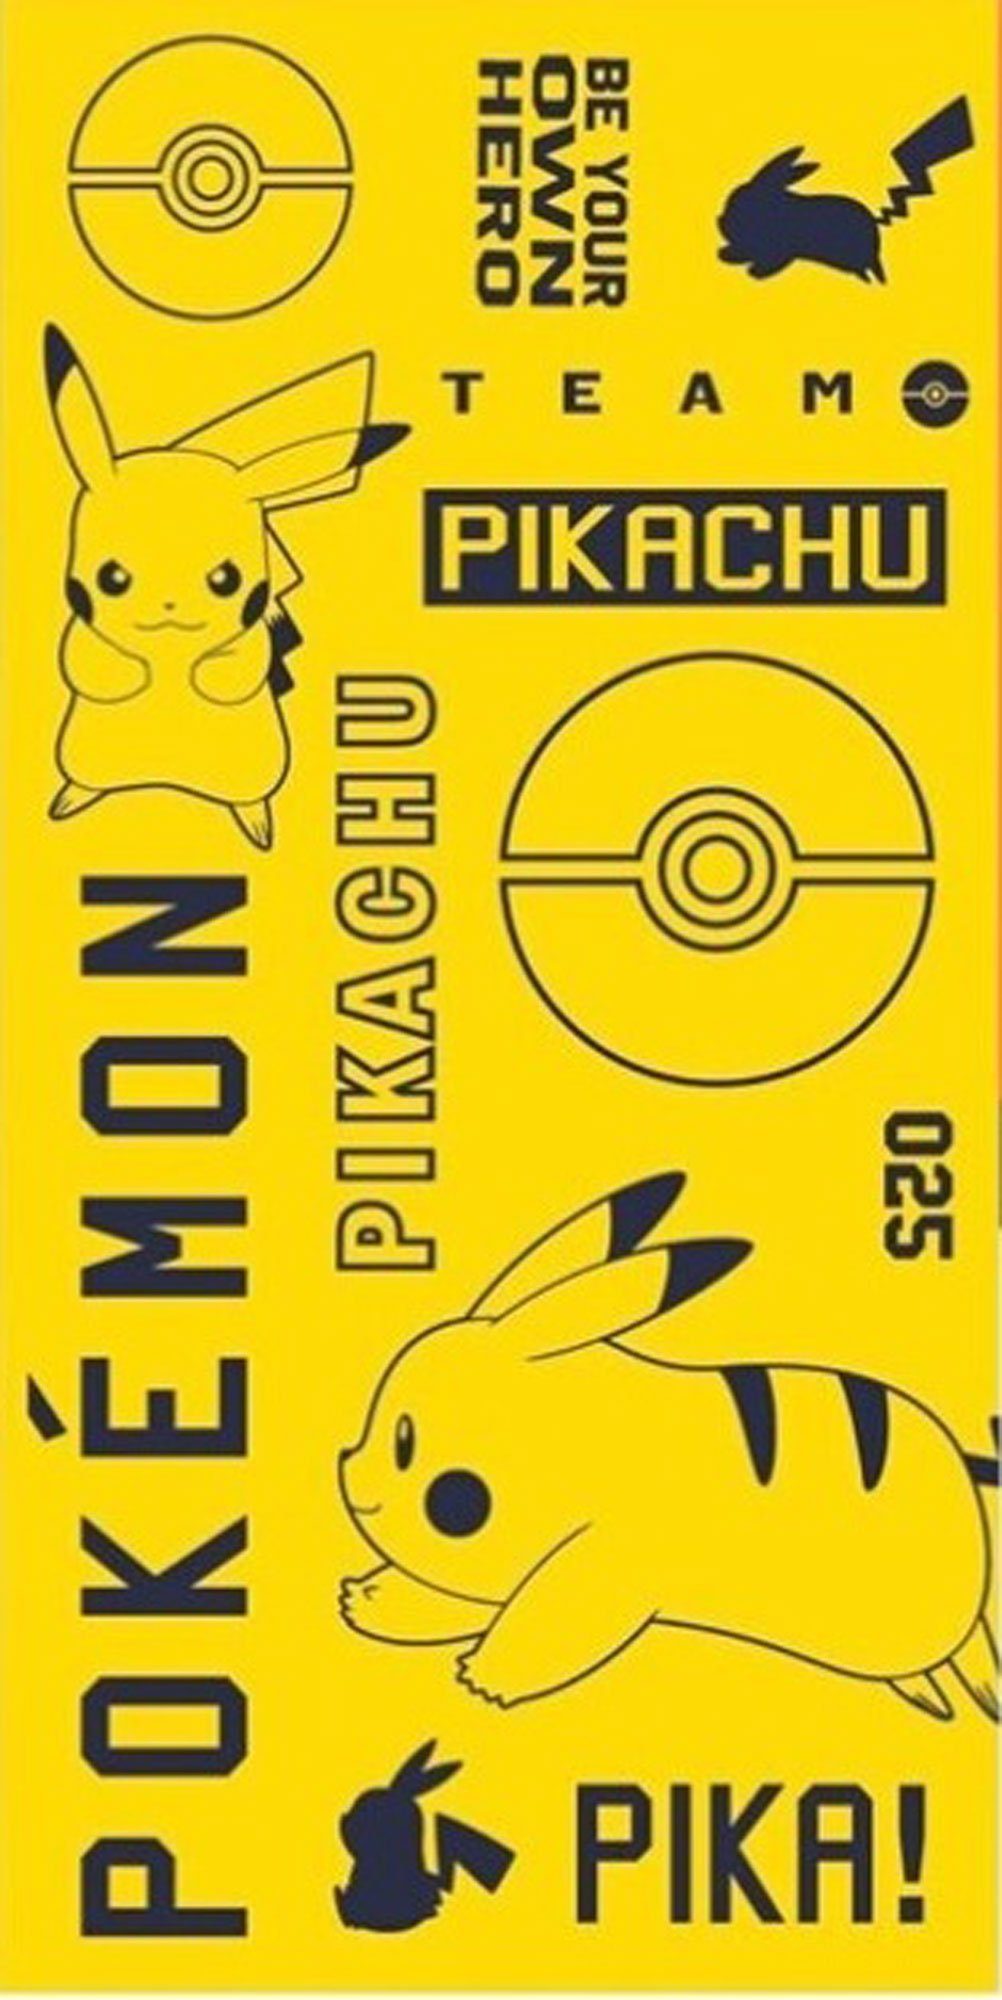 empireposter Handtuch Pokemon Handtuch 70x140 - - - - Strandtuch - Pikachu Pika cm Baumwoll